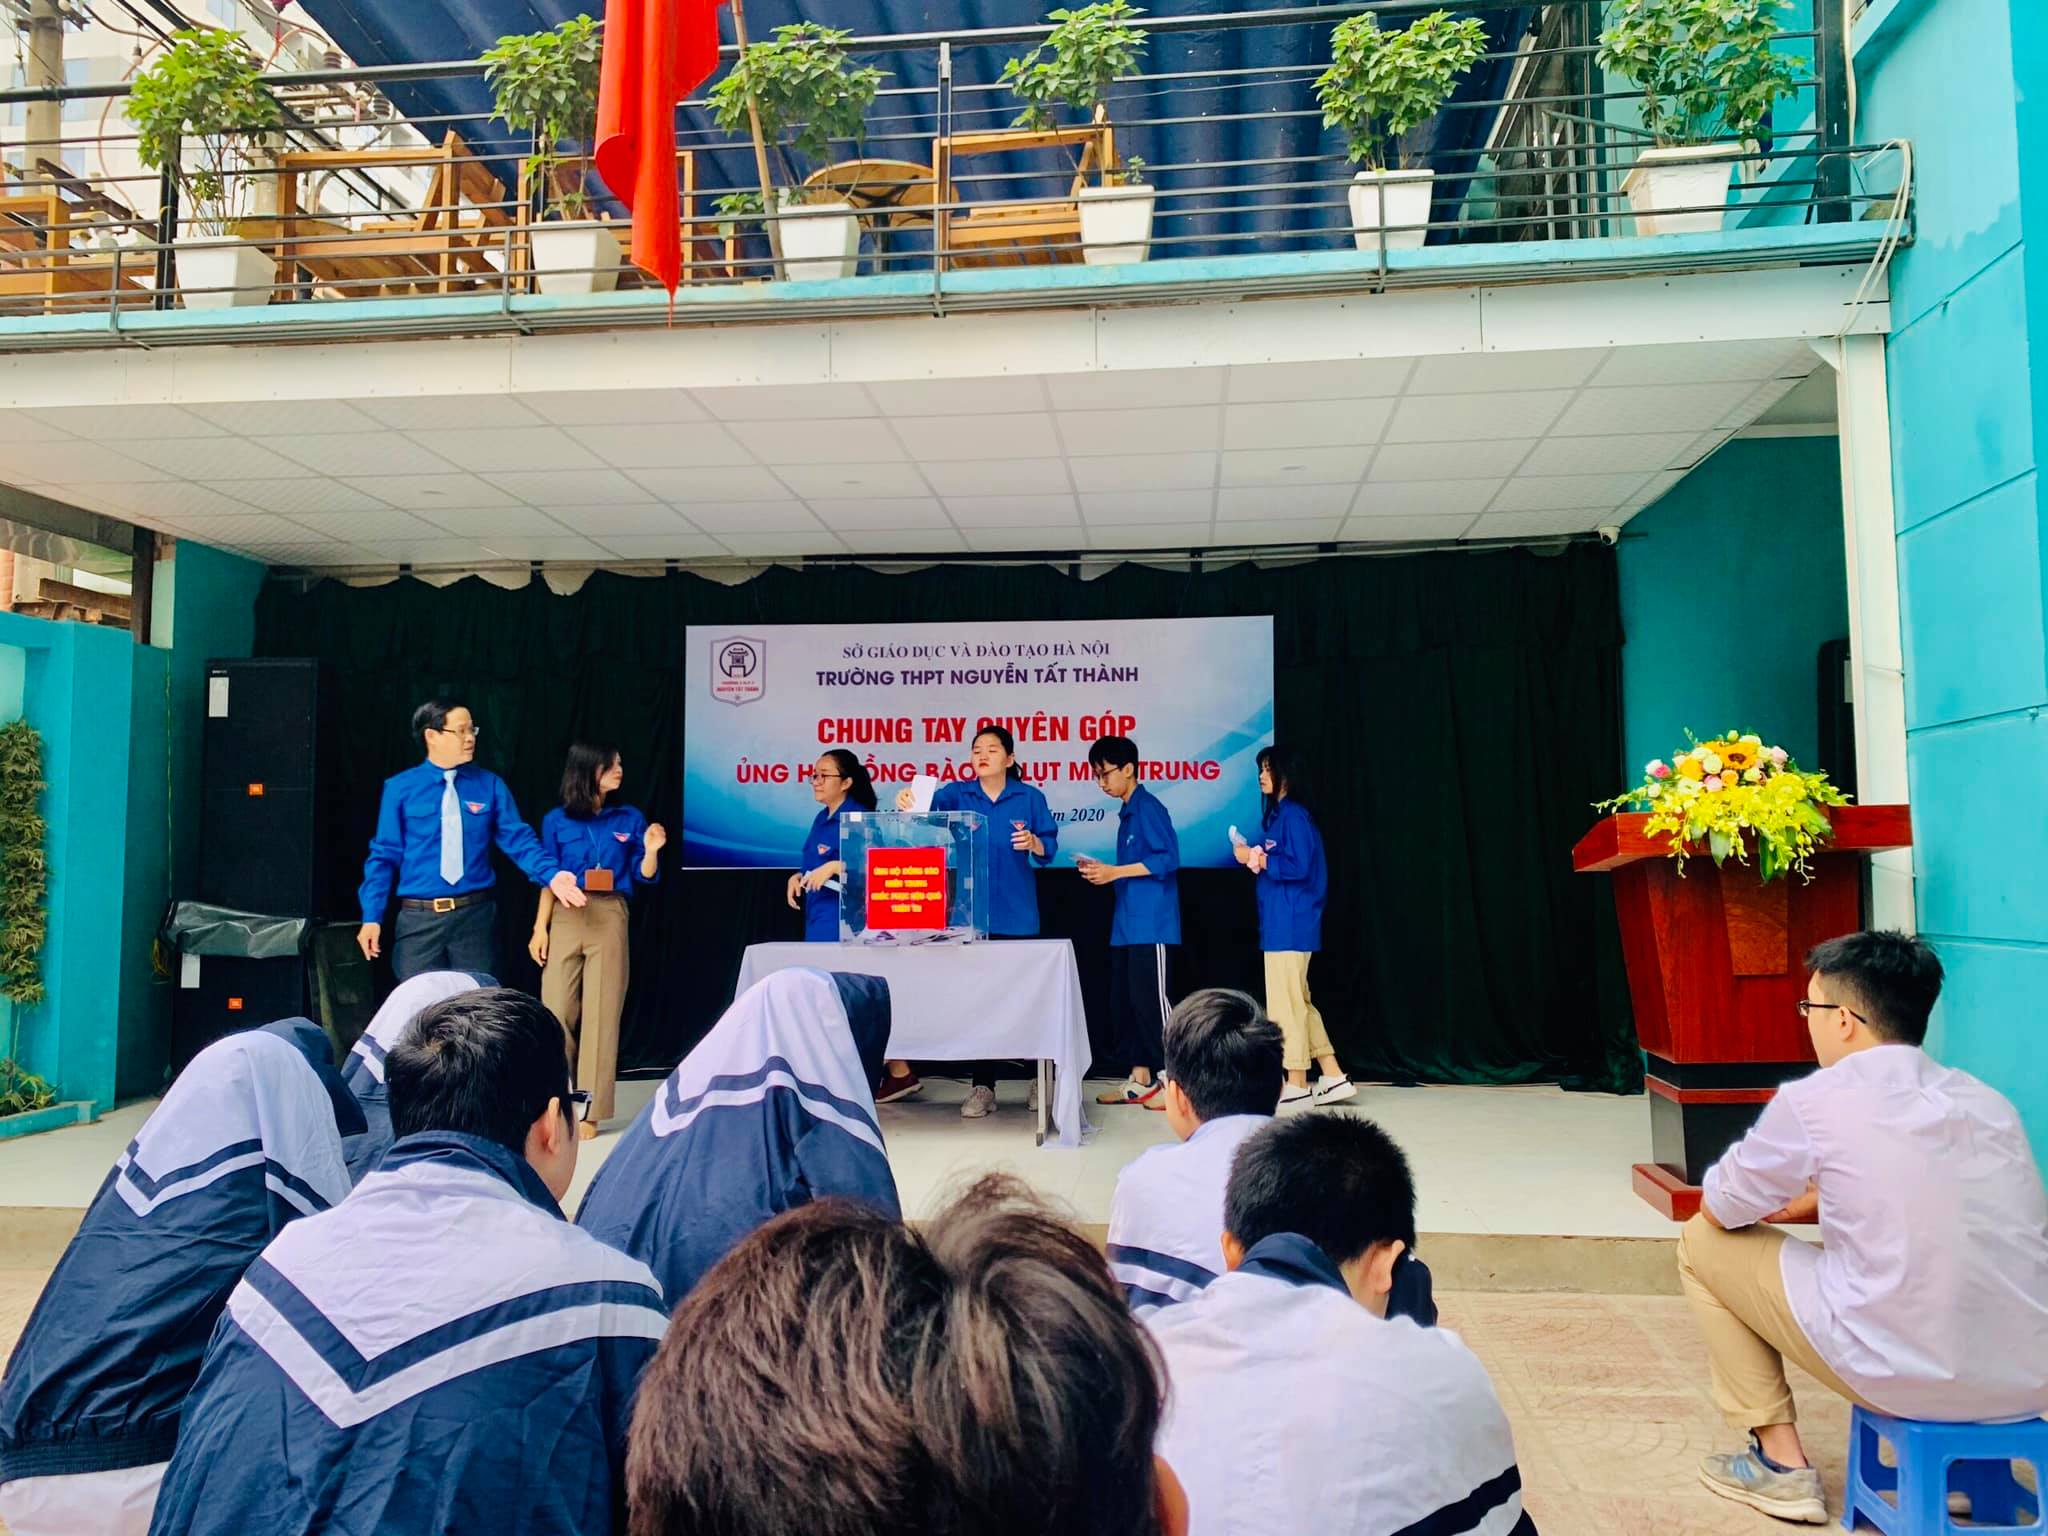 Thầy trò trường THPT Nguyễn Tất Thành quyên góp ủng hộ đồng bào miền trung